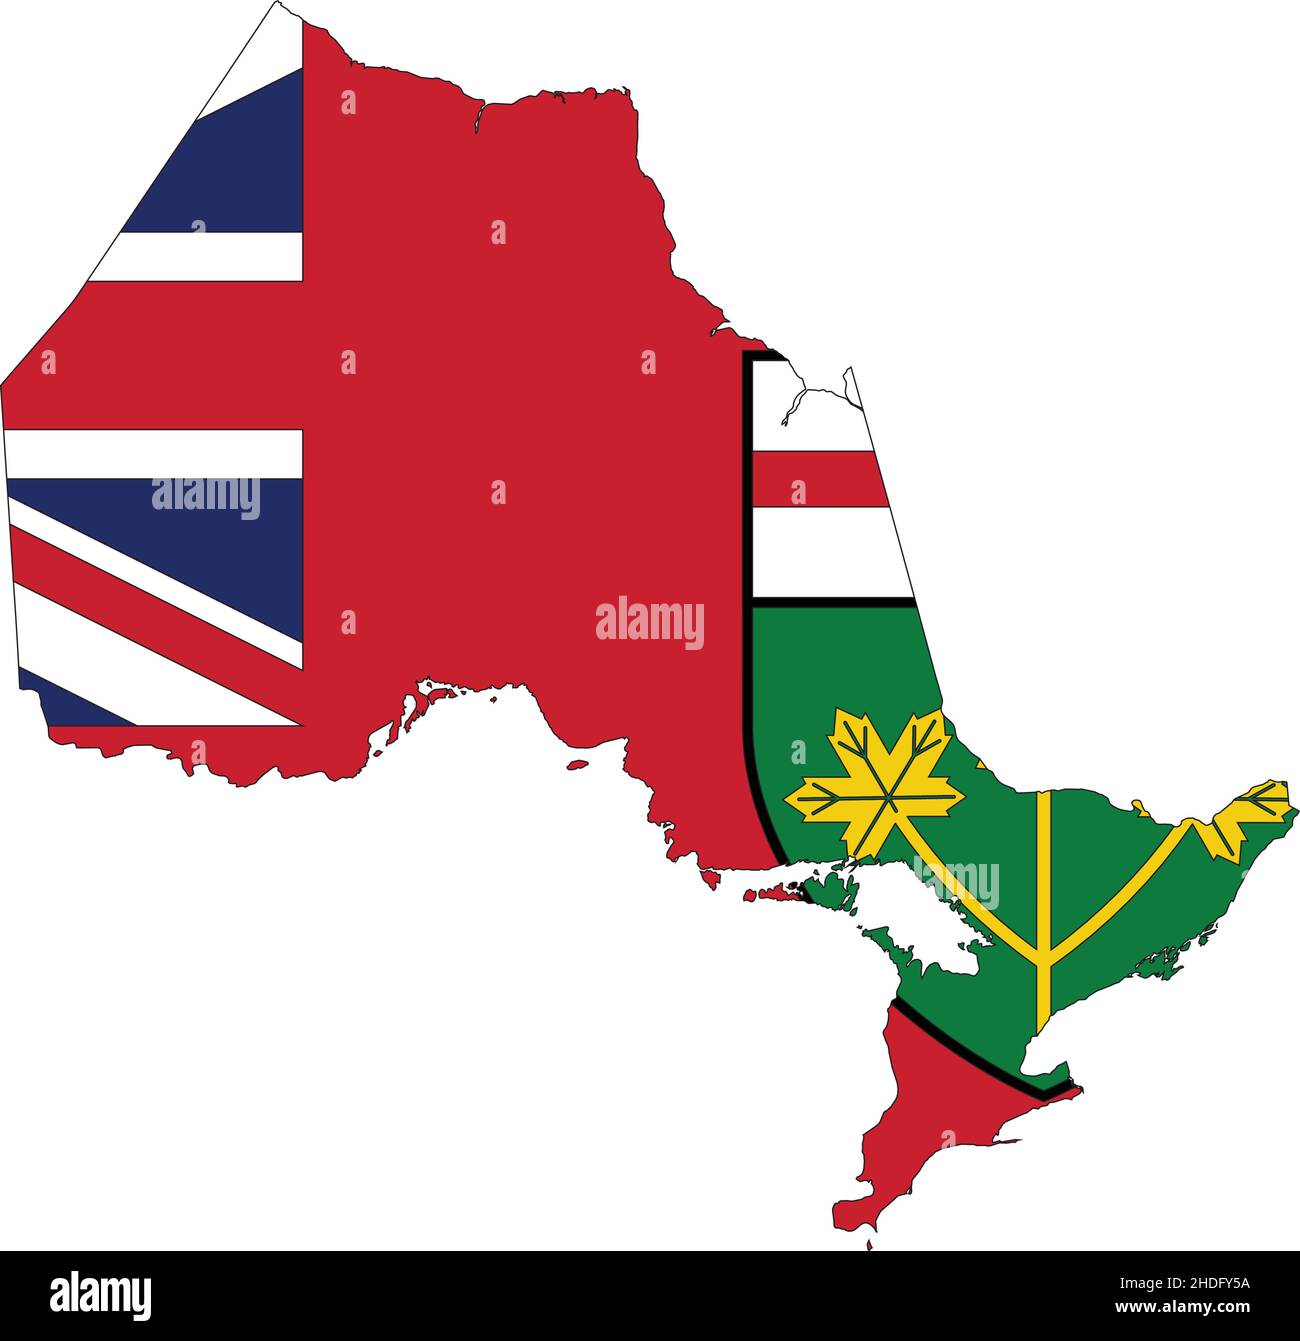 Flache Vektor-Verwaltungsflaggenkarte der kanadischen Provinz ONTARIO, KANADA Stock Vektor